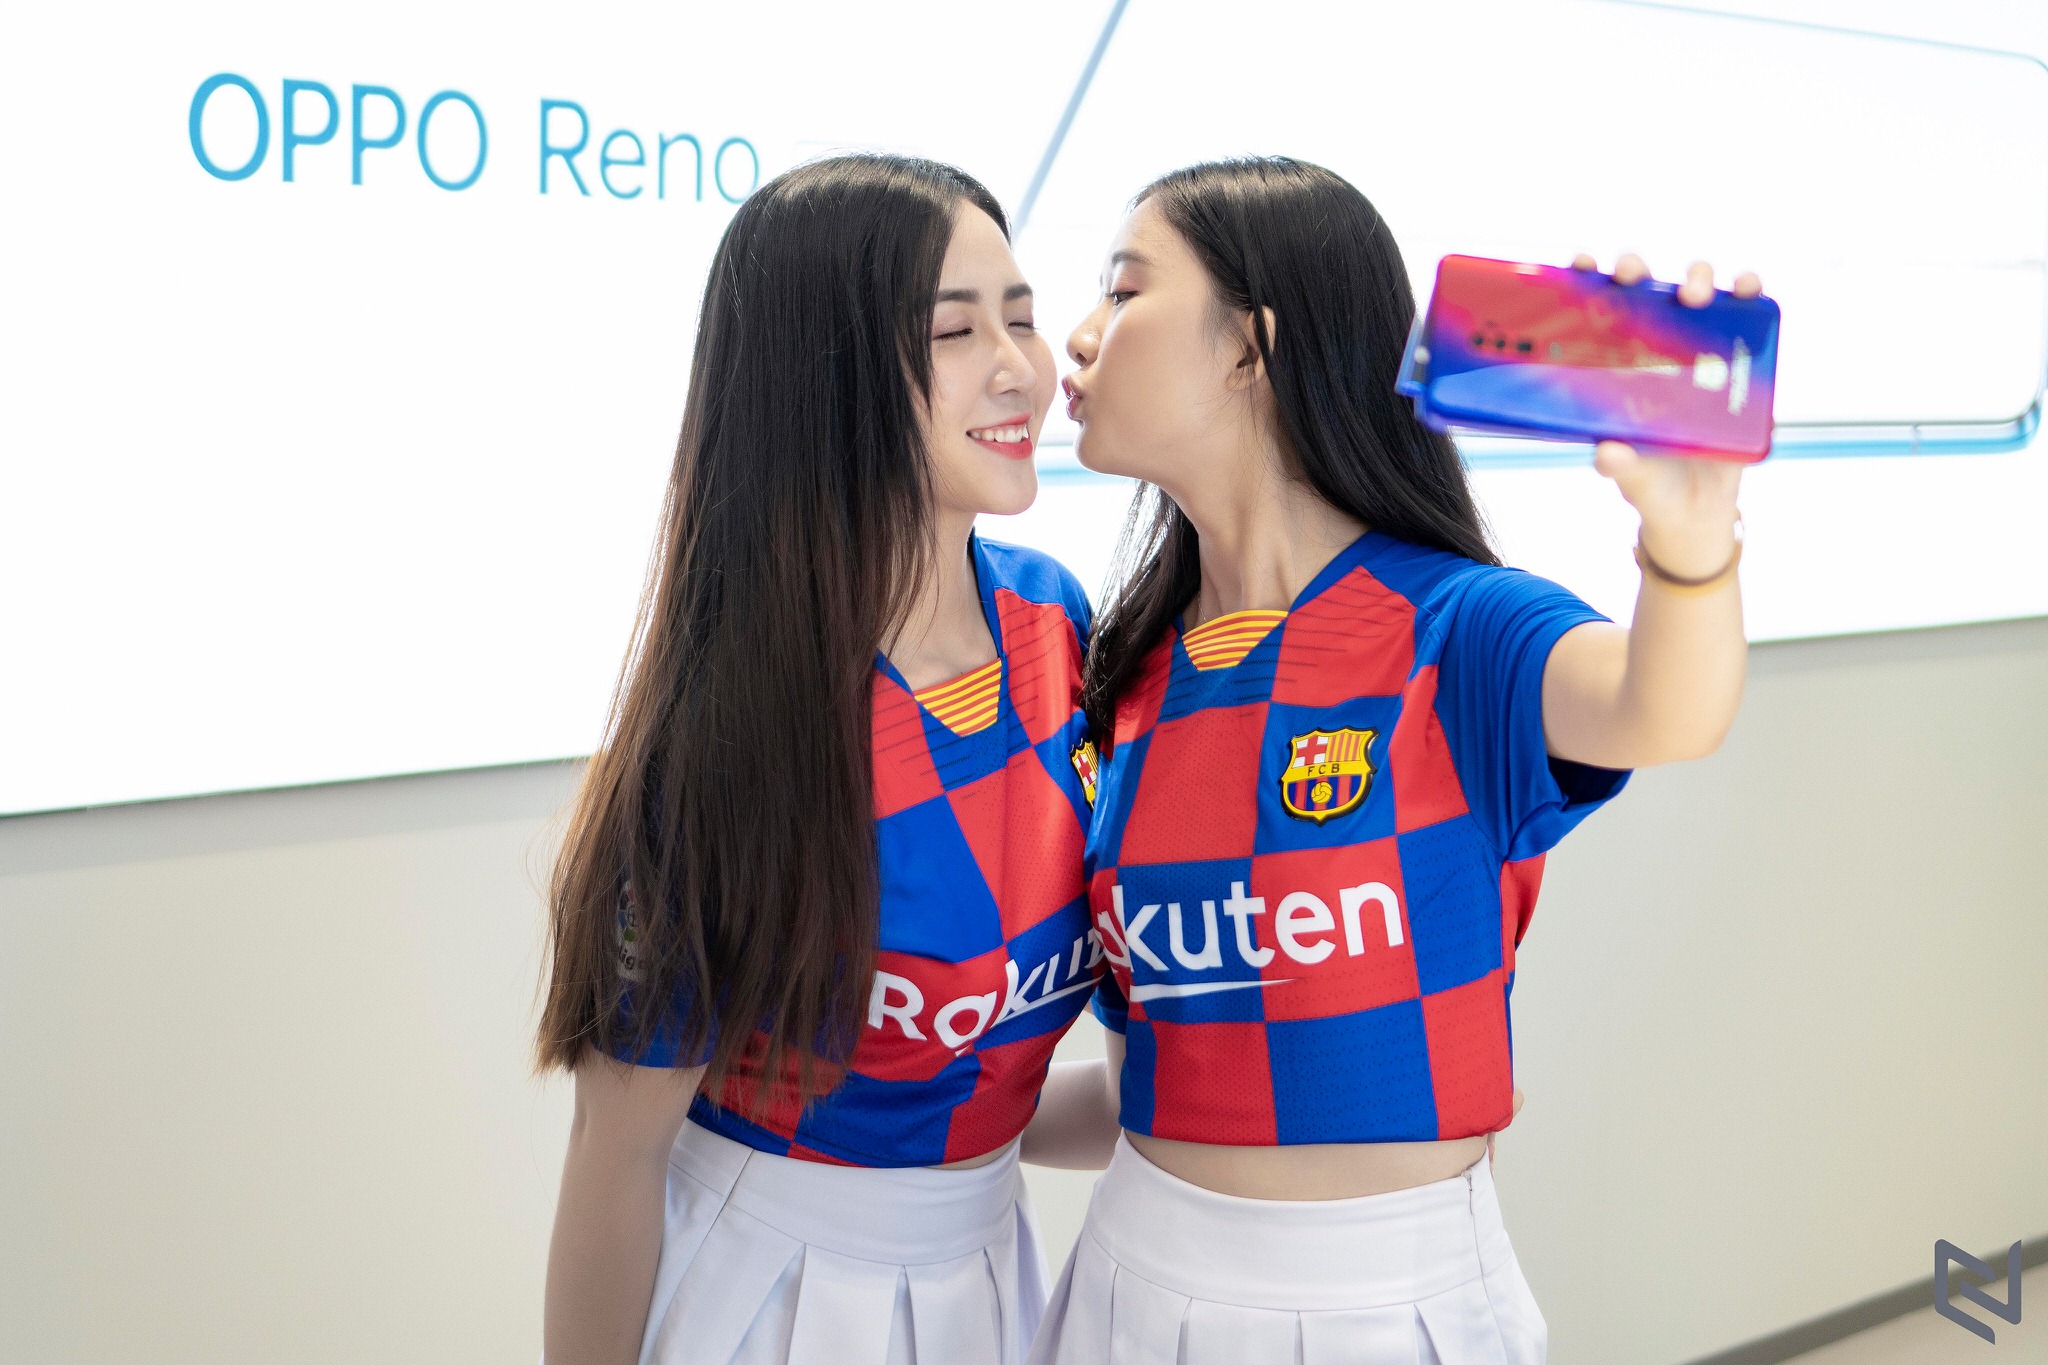 Oppo Reno 10x Zoom phiên bản đặc biệt Barcelona chính thức lên kệ giá 24.99 triệu đồng